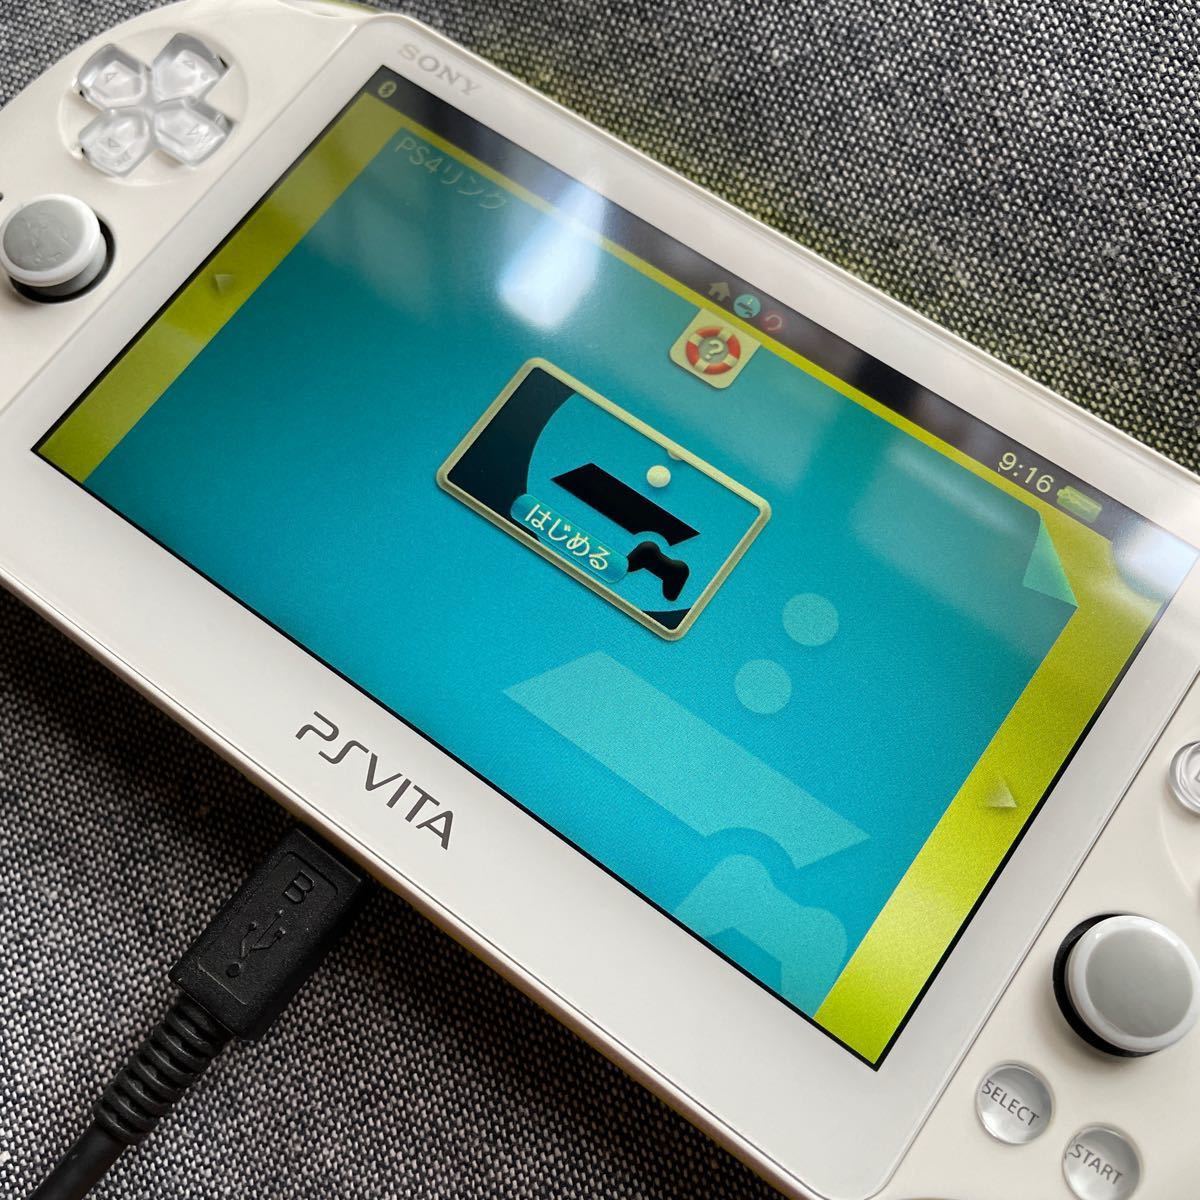 PS Vita PCH-2000 ライムグリーン/ホワイト Wi-Fiモデル 【8GB専用のメモリーカード付き】